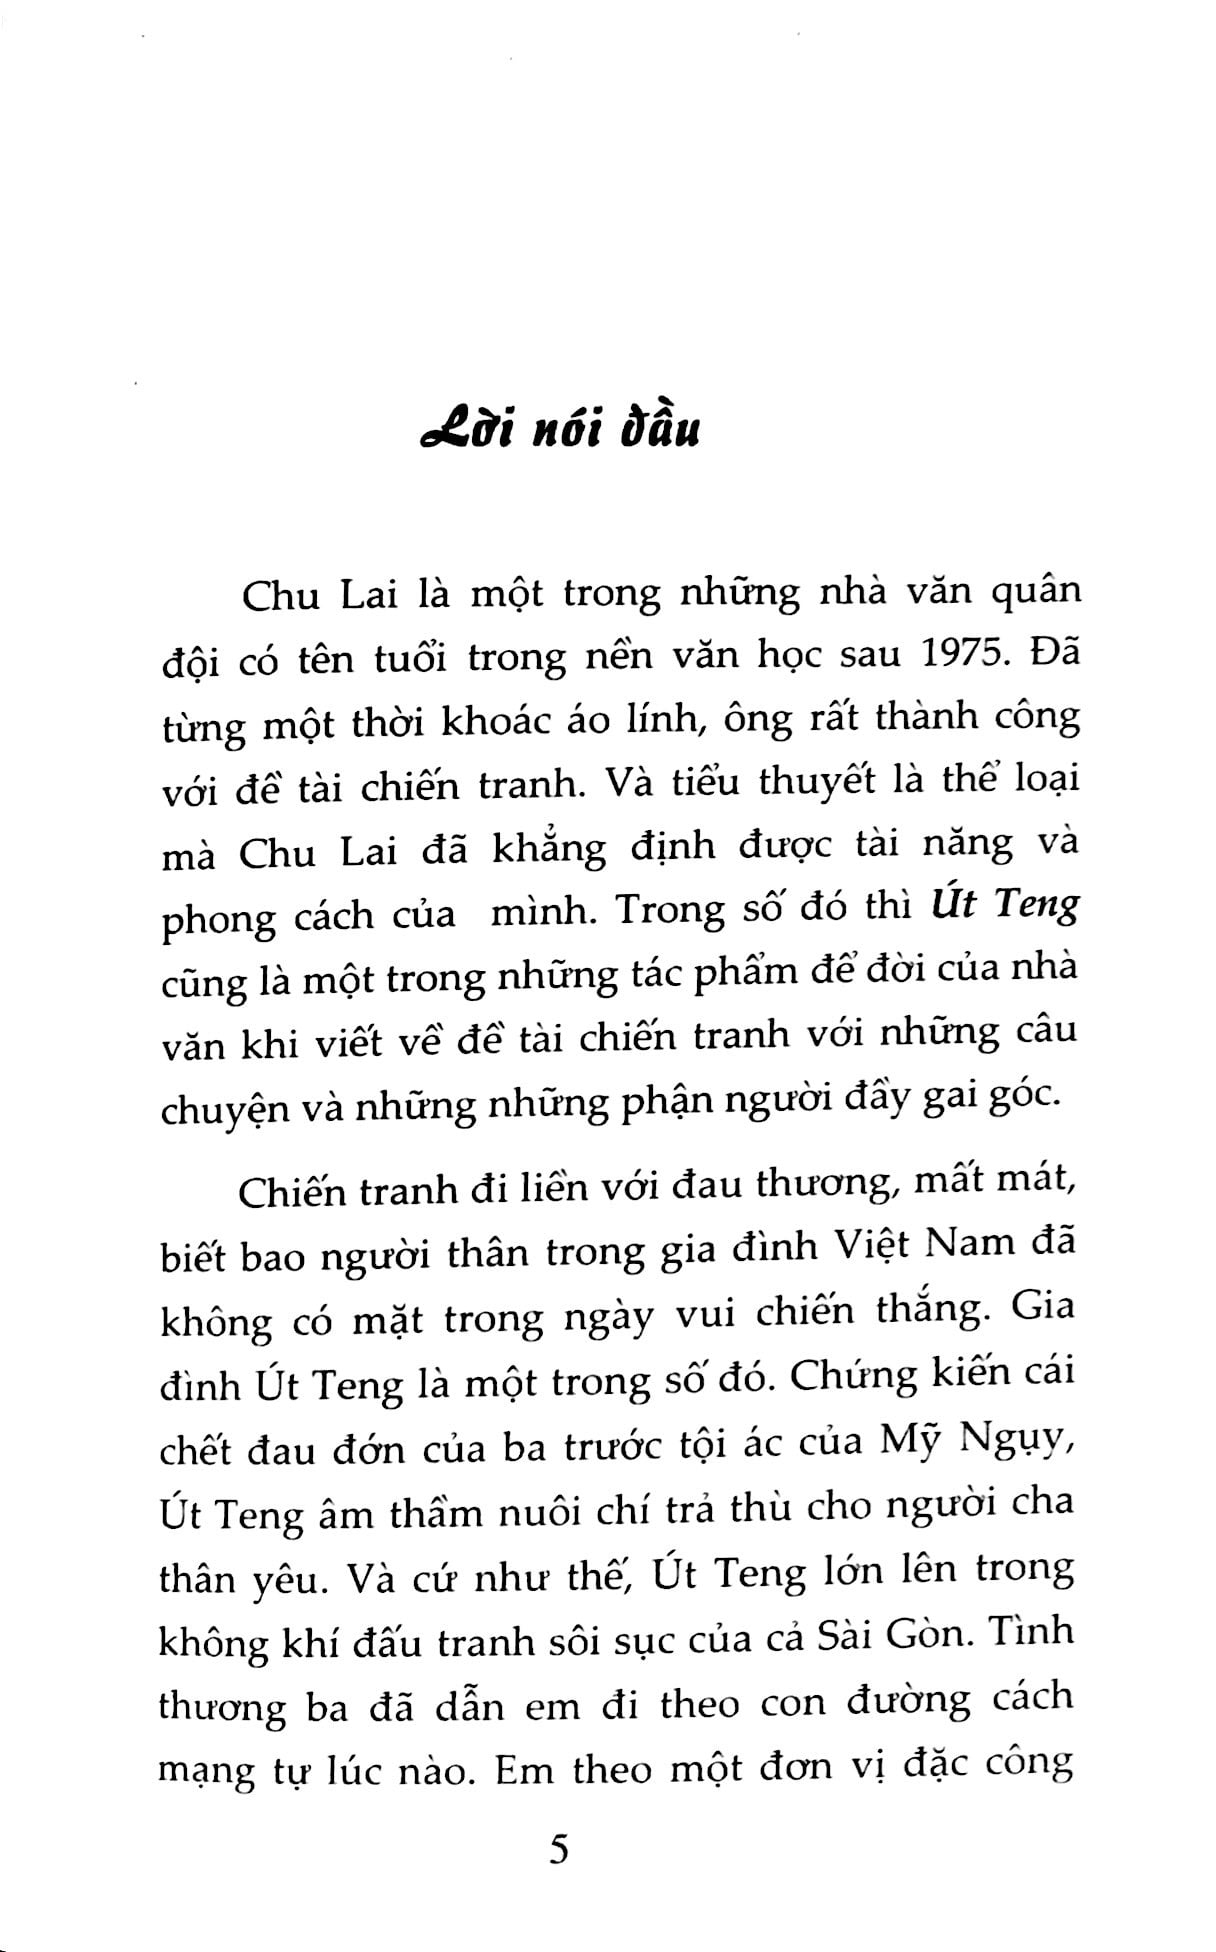 Út Teng - Chu Lai